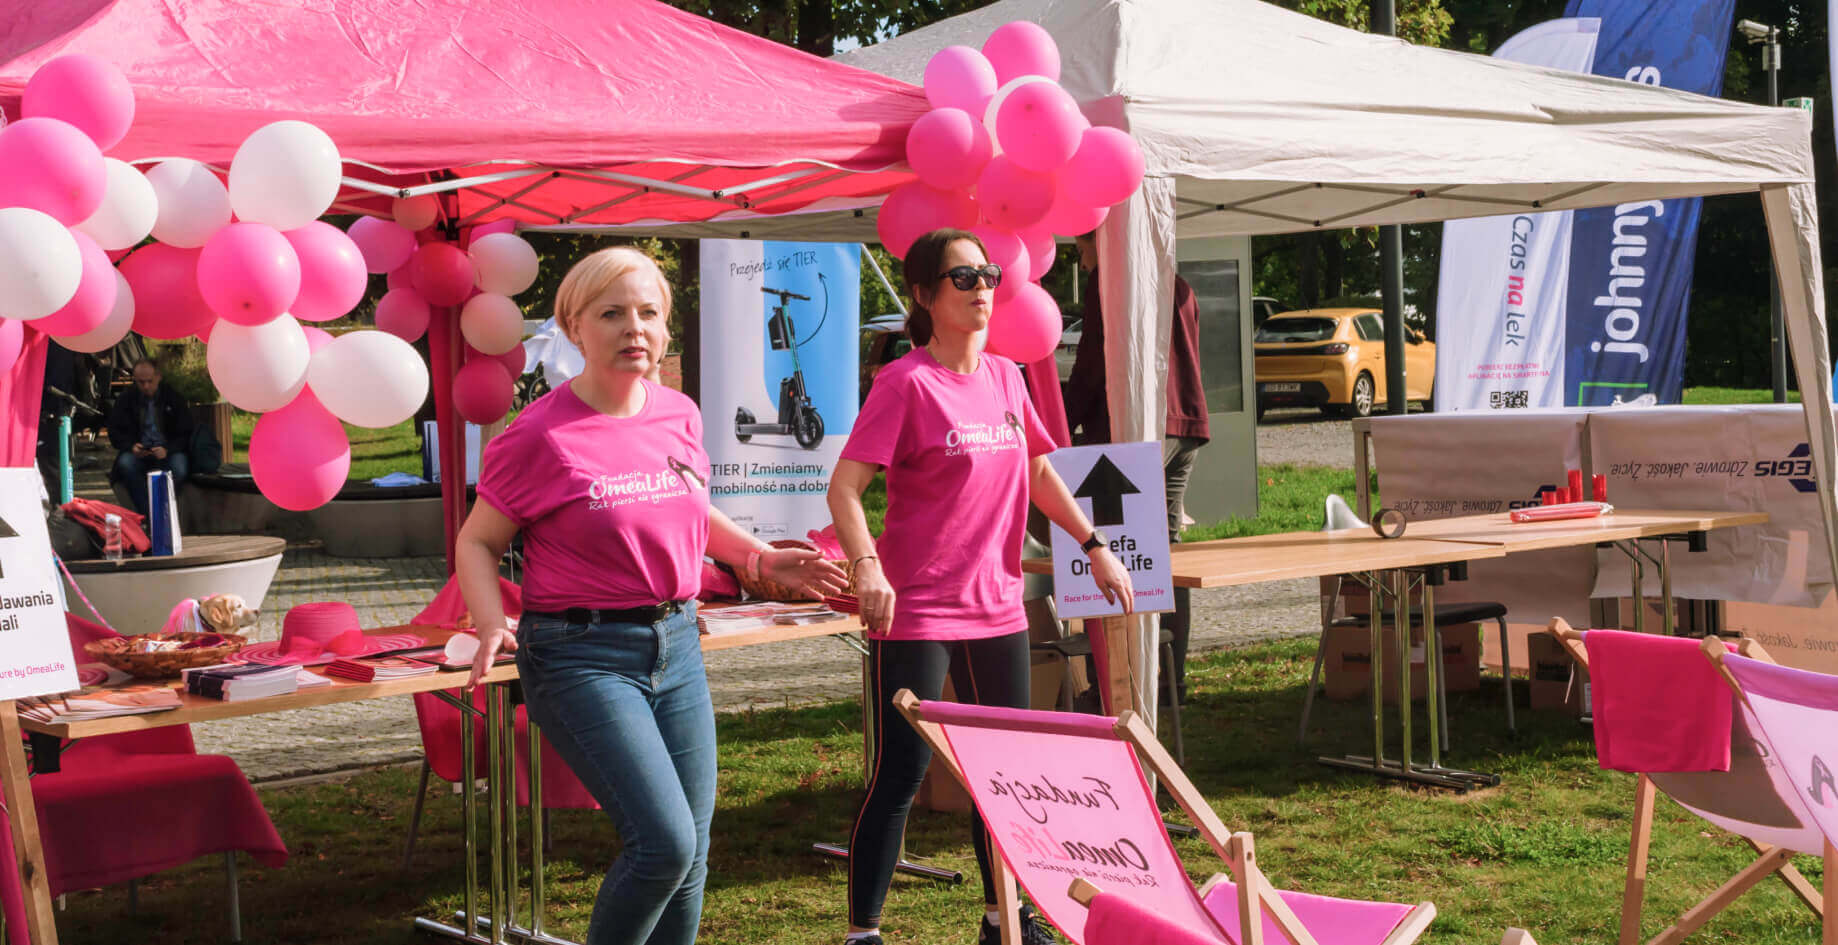 Johnnybros sponsorem race for the cure polska 2021 marszu i biegu w gdasku wspierajcego chorych na raka piersi